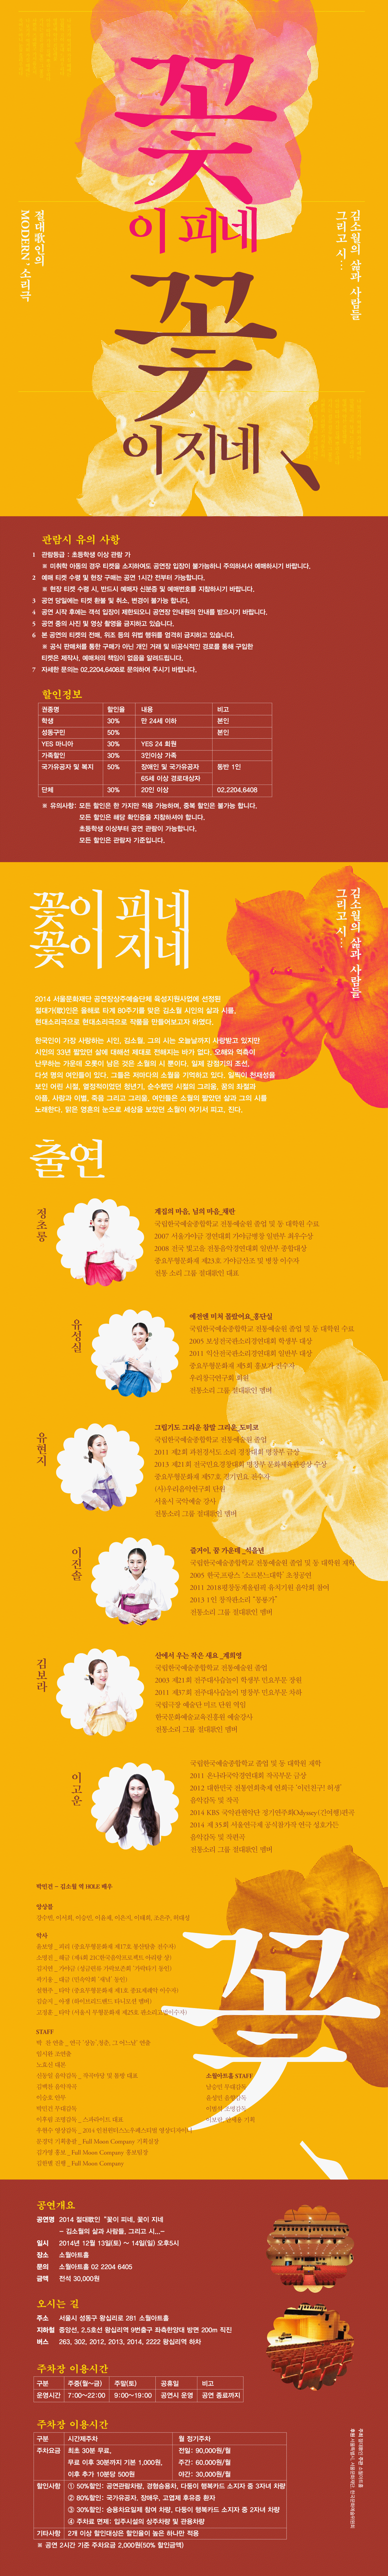 크기변환_2014-절대가인-꽃이피네꽃이지네-웹전단-ok.png